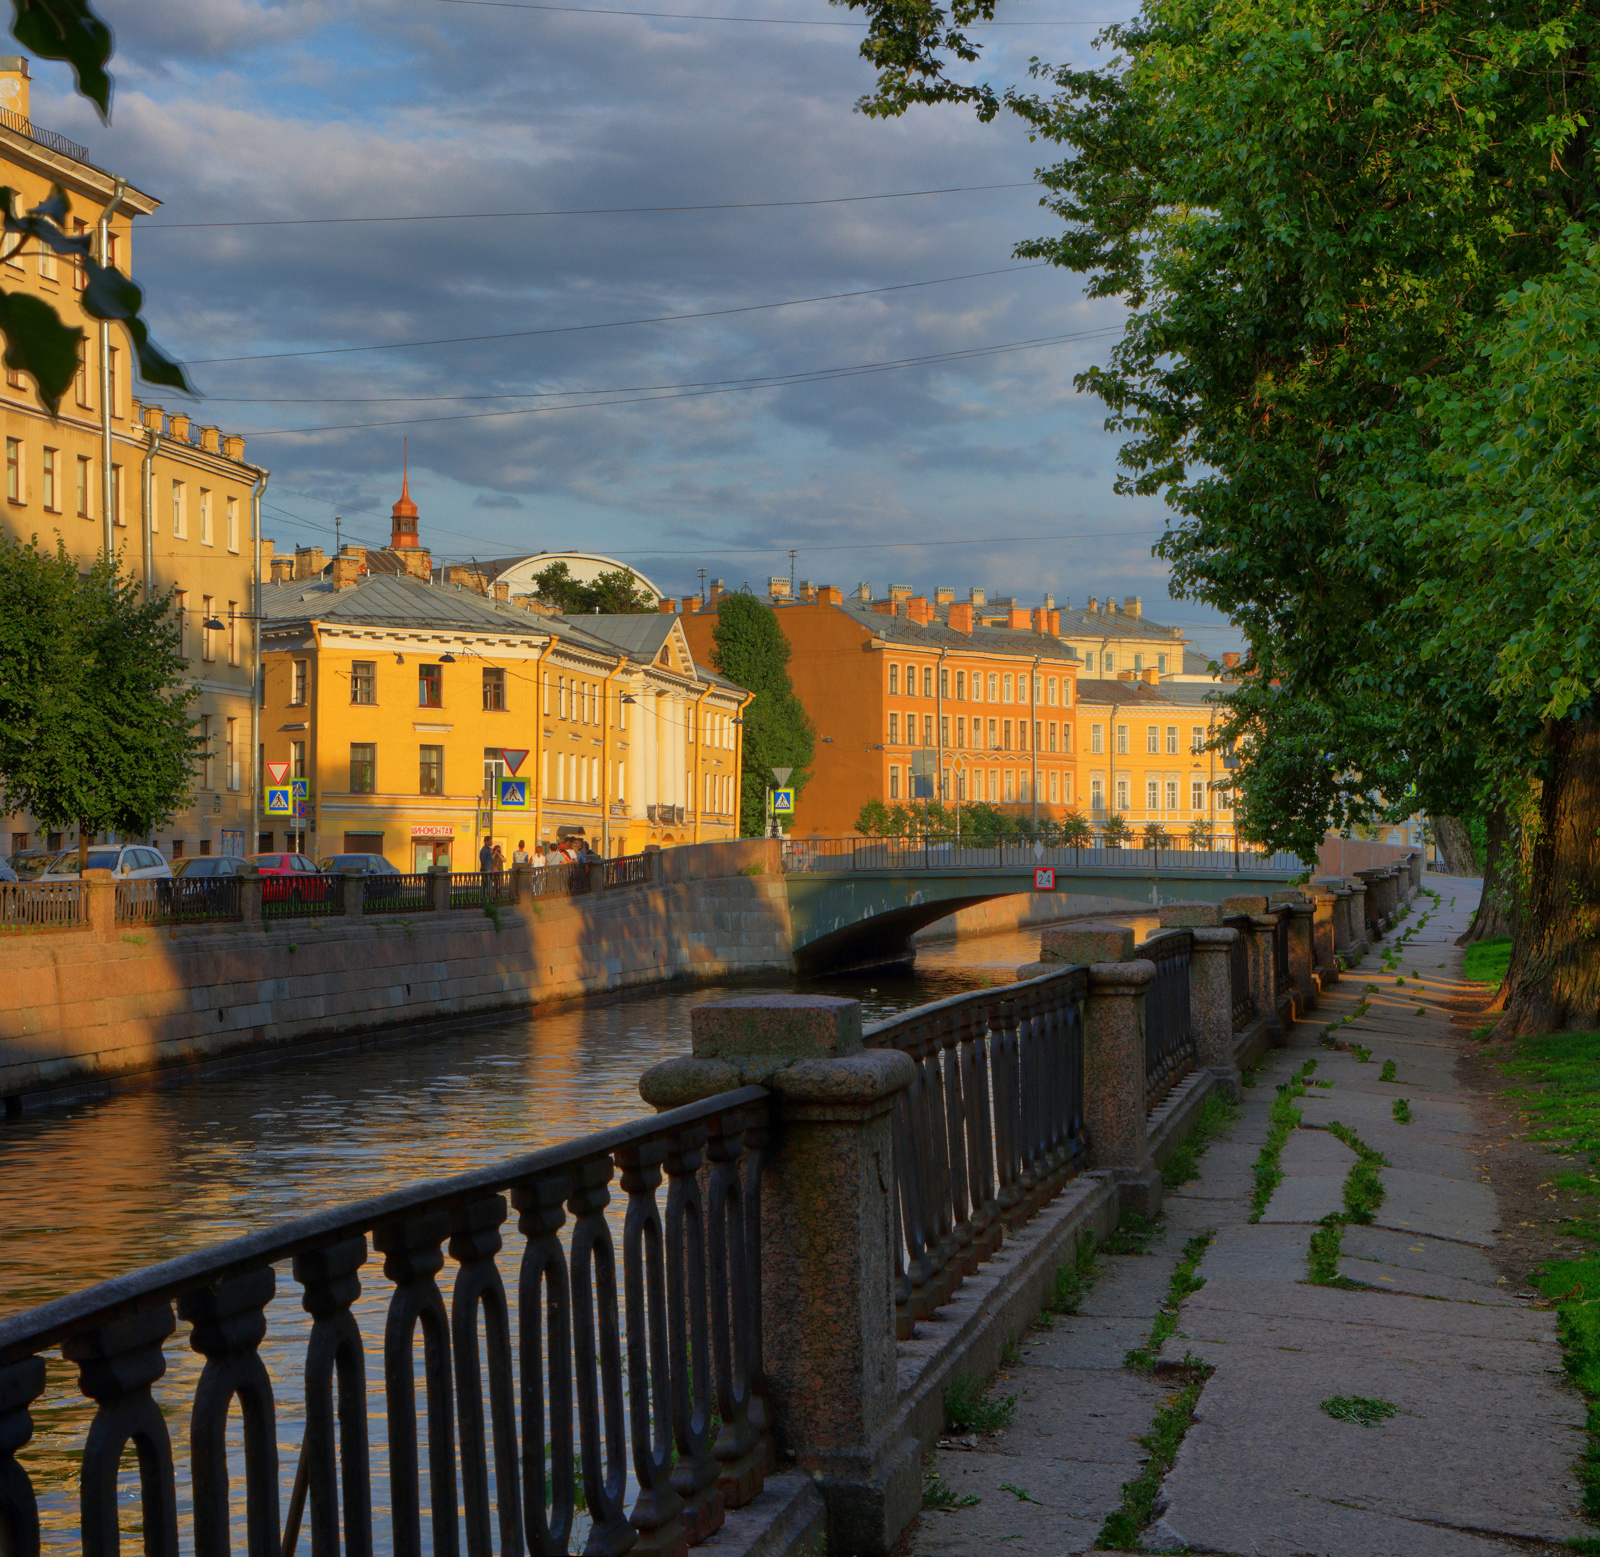 По каналу Грибоедова - Санкт-Петербург Санкт-Петербург Грибоедова канал набережная река вечер закат канала лето гранит